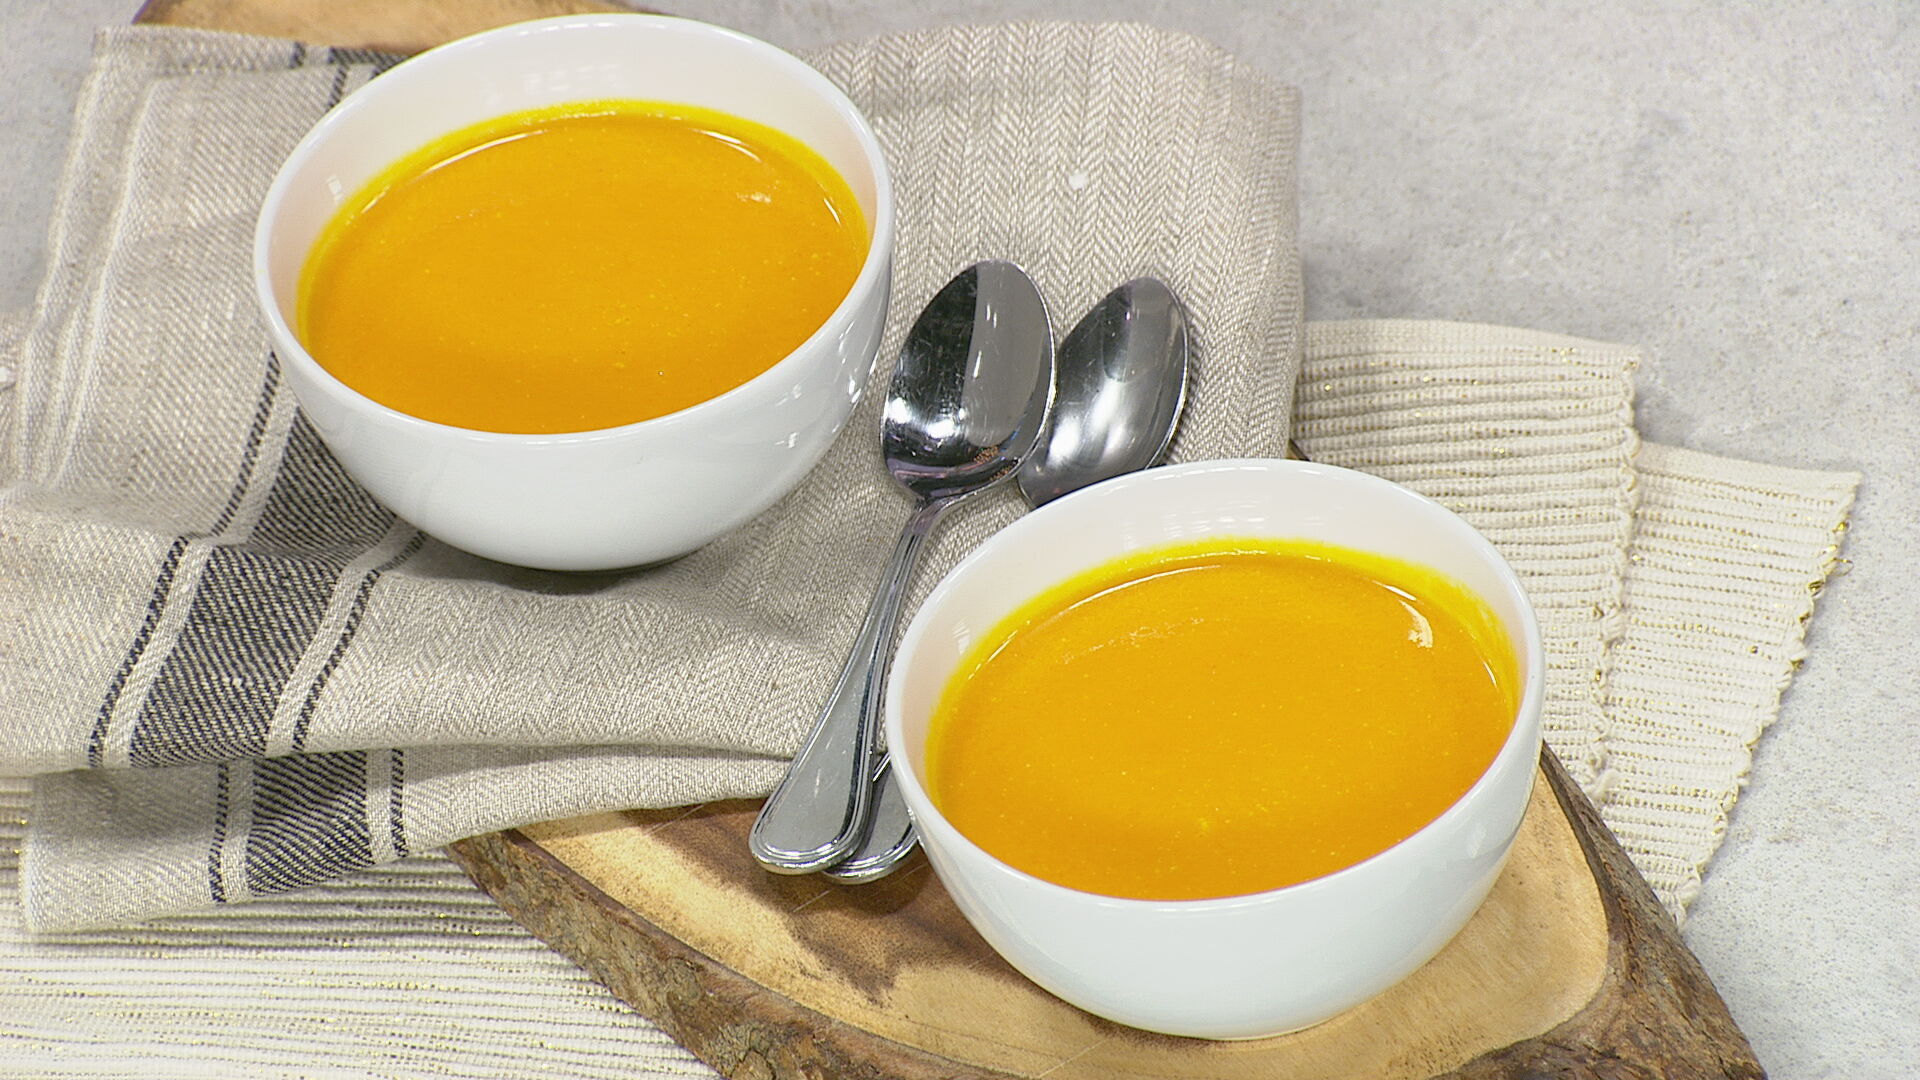 Carrot ginger soup